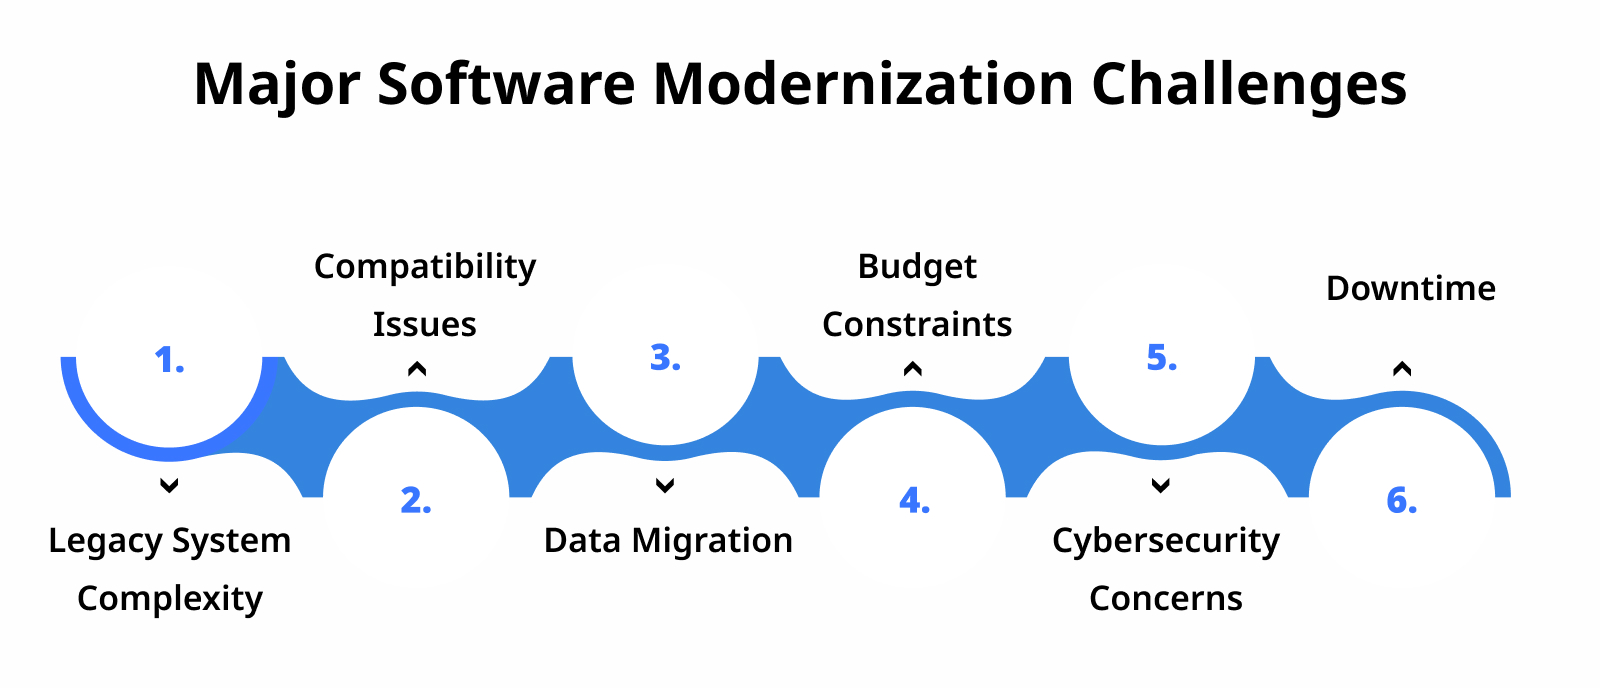 Major Software Modernization Challenges